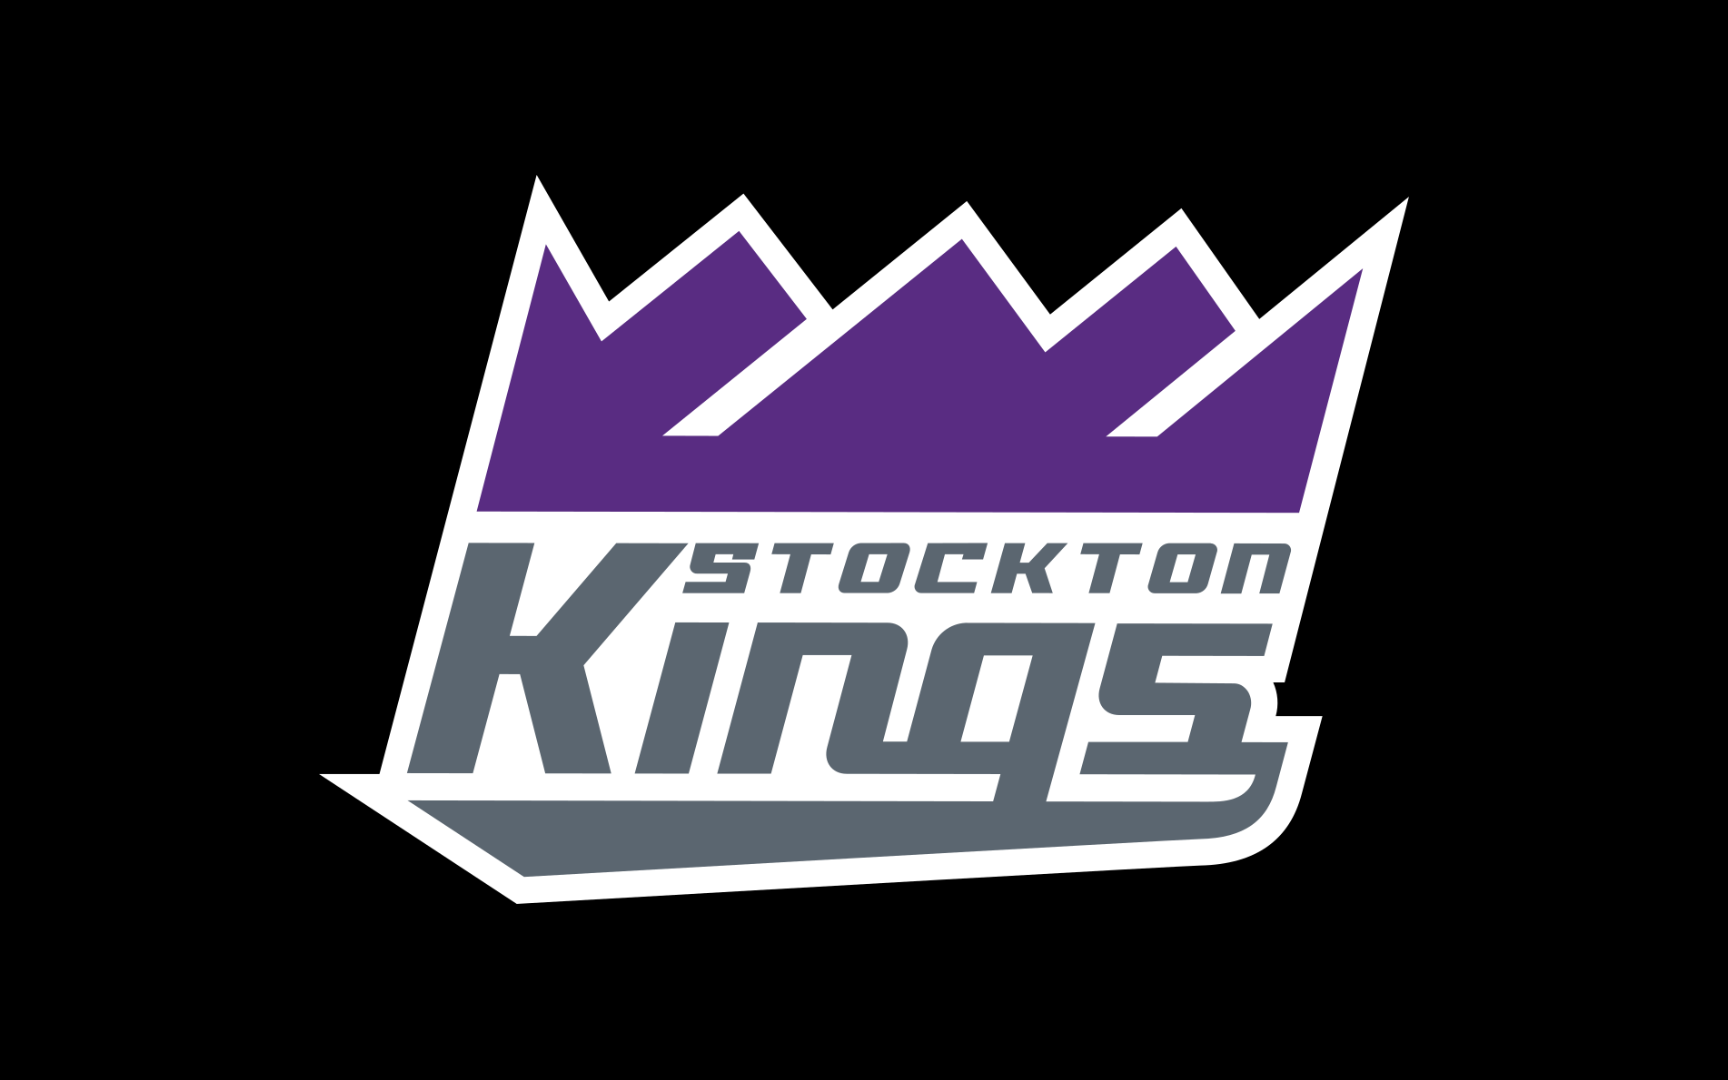 Stockton Kings vs Long Island Nets